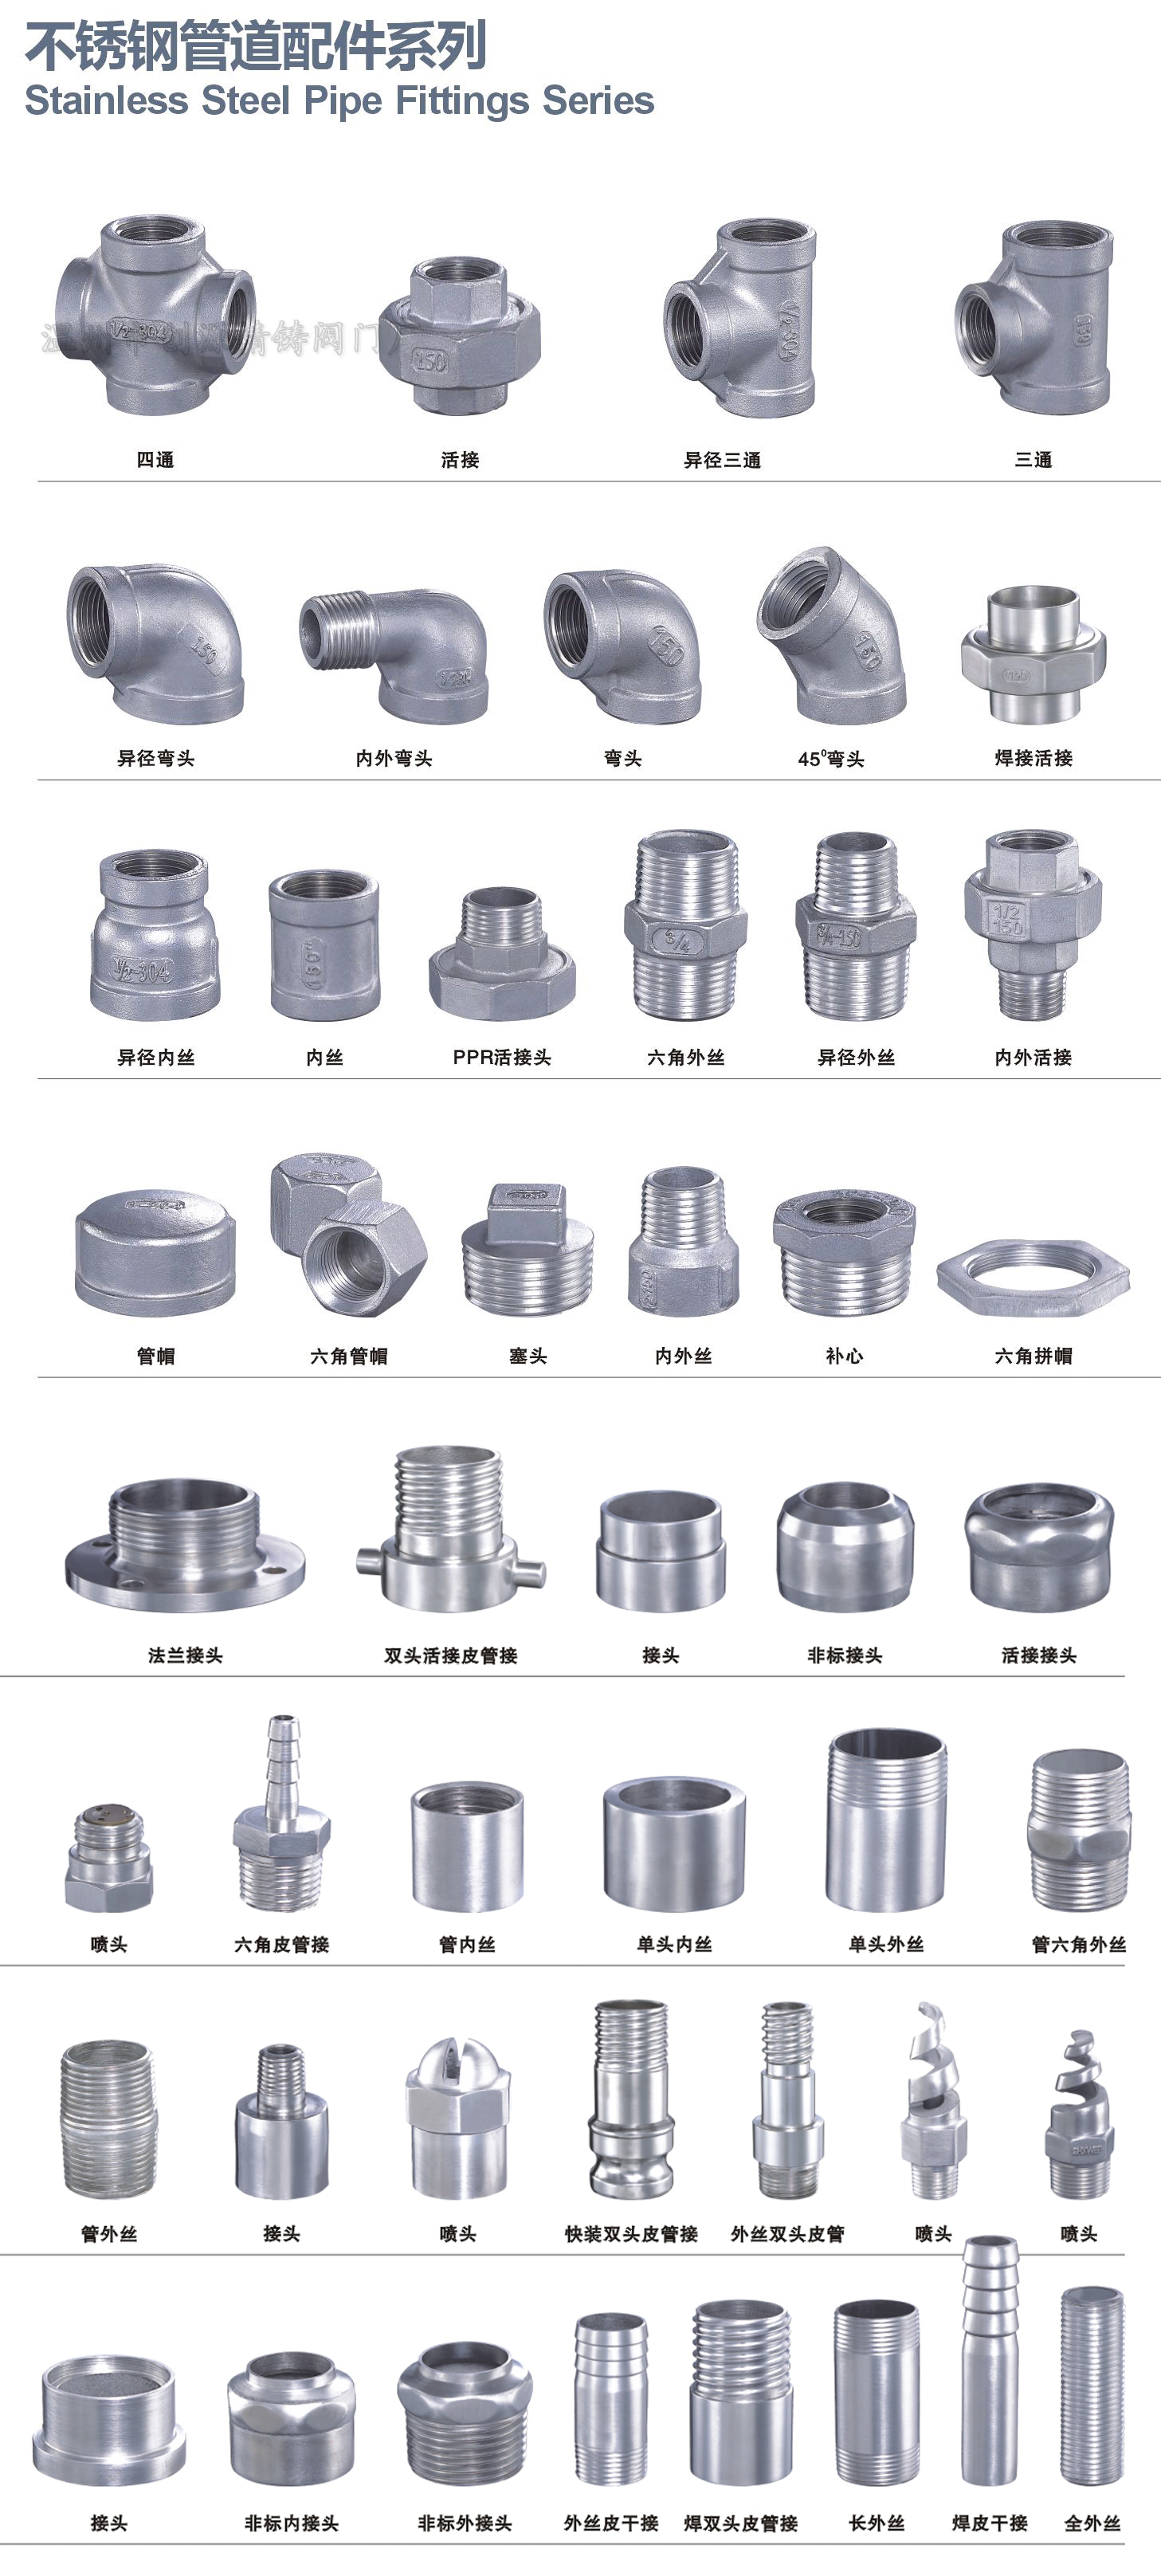 Stainless Steel Pipe Fittings Series